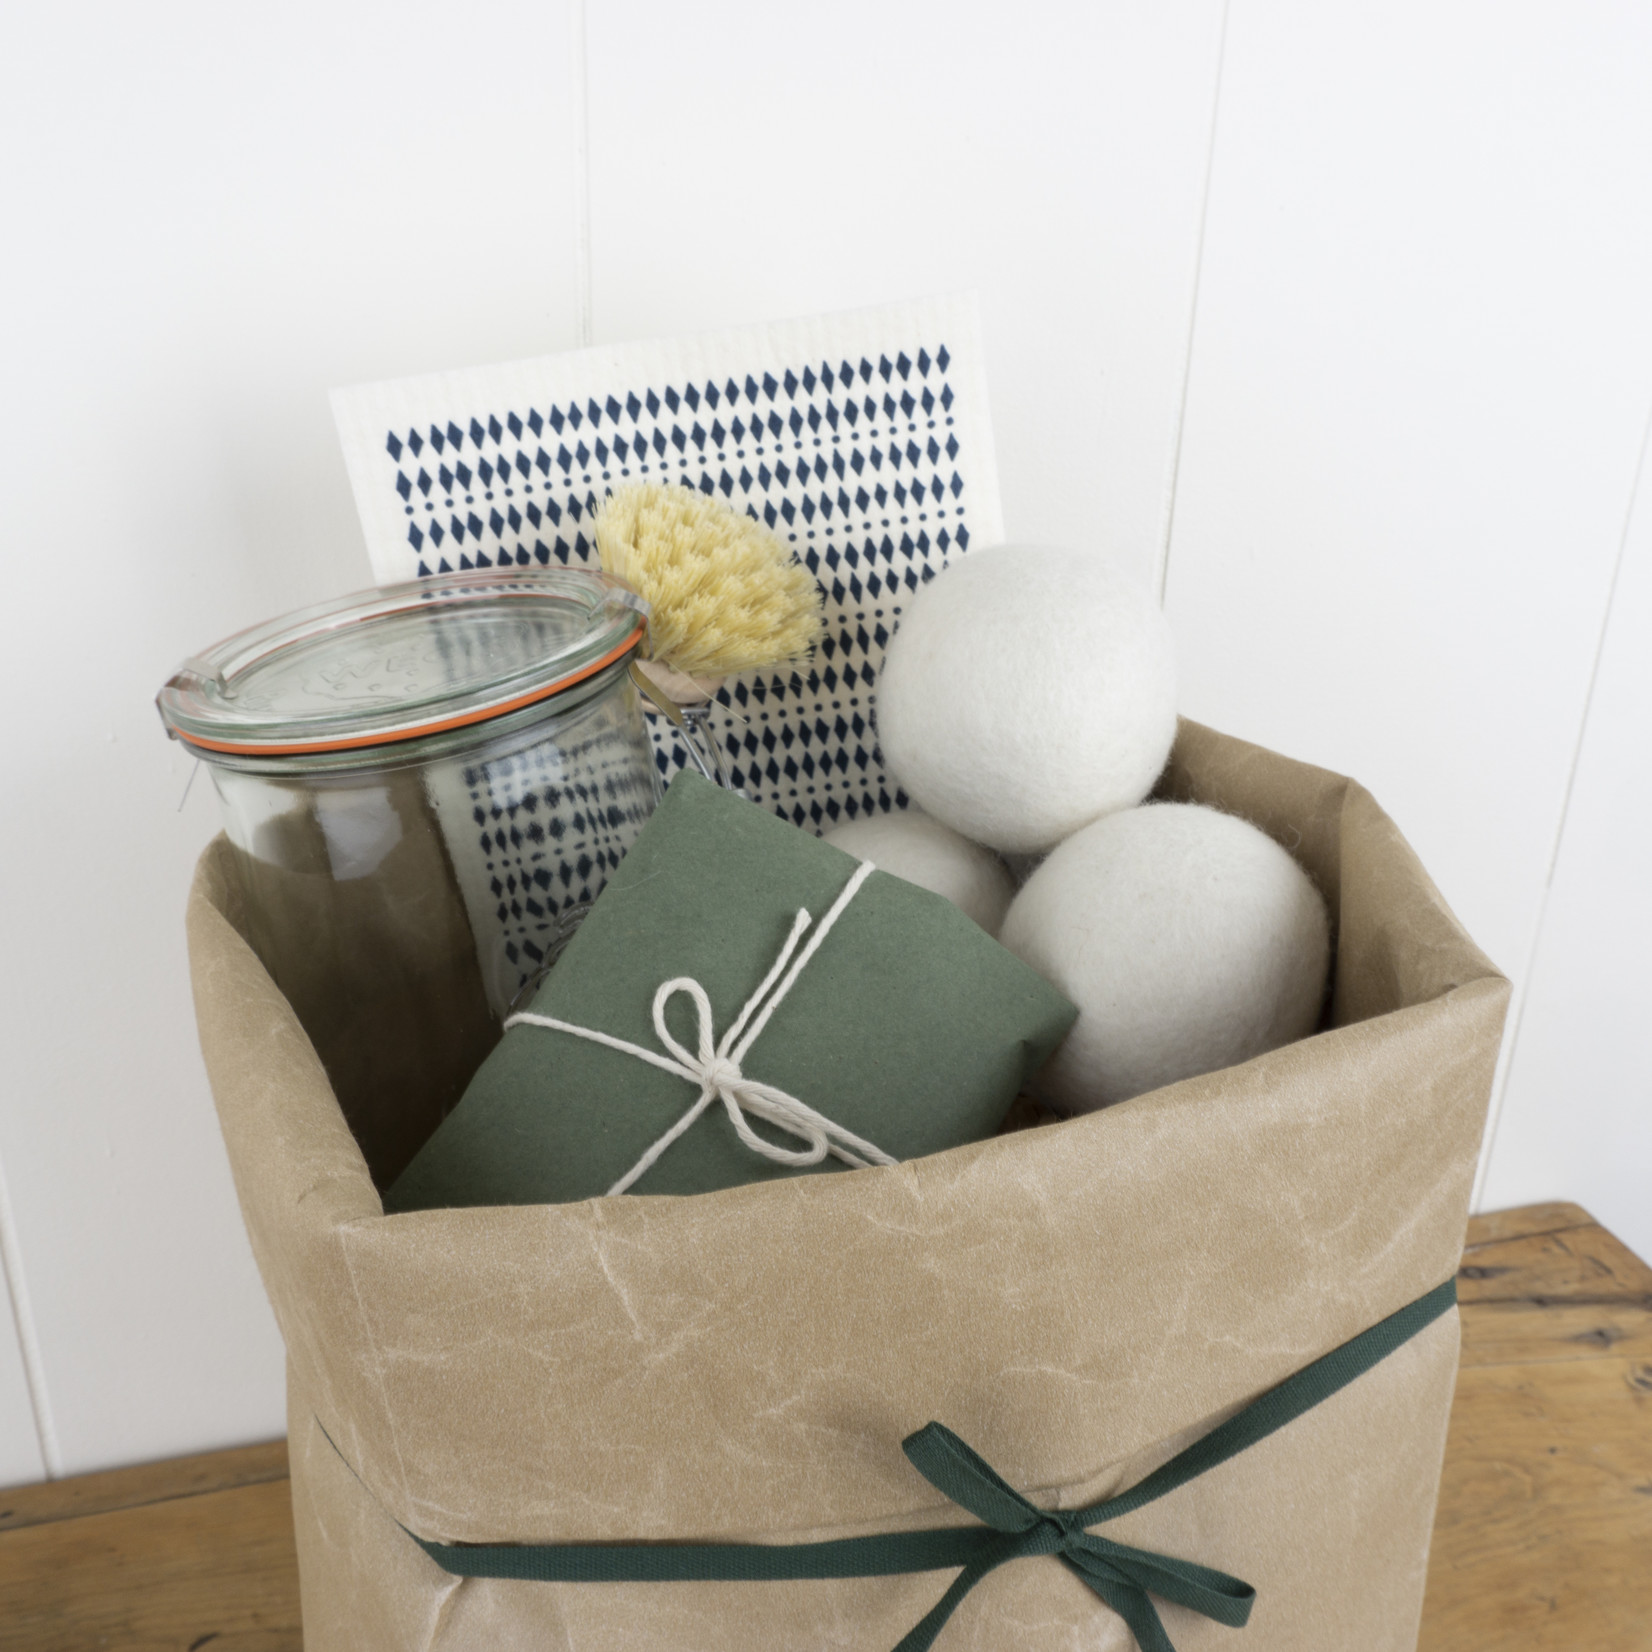 Zero-Waste gift arrangement